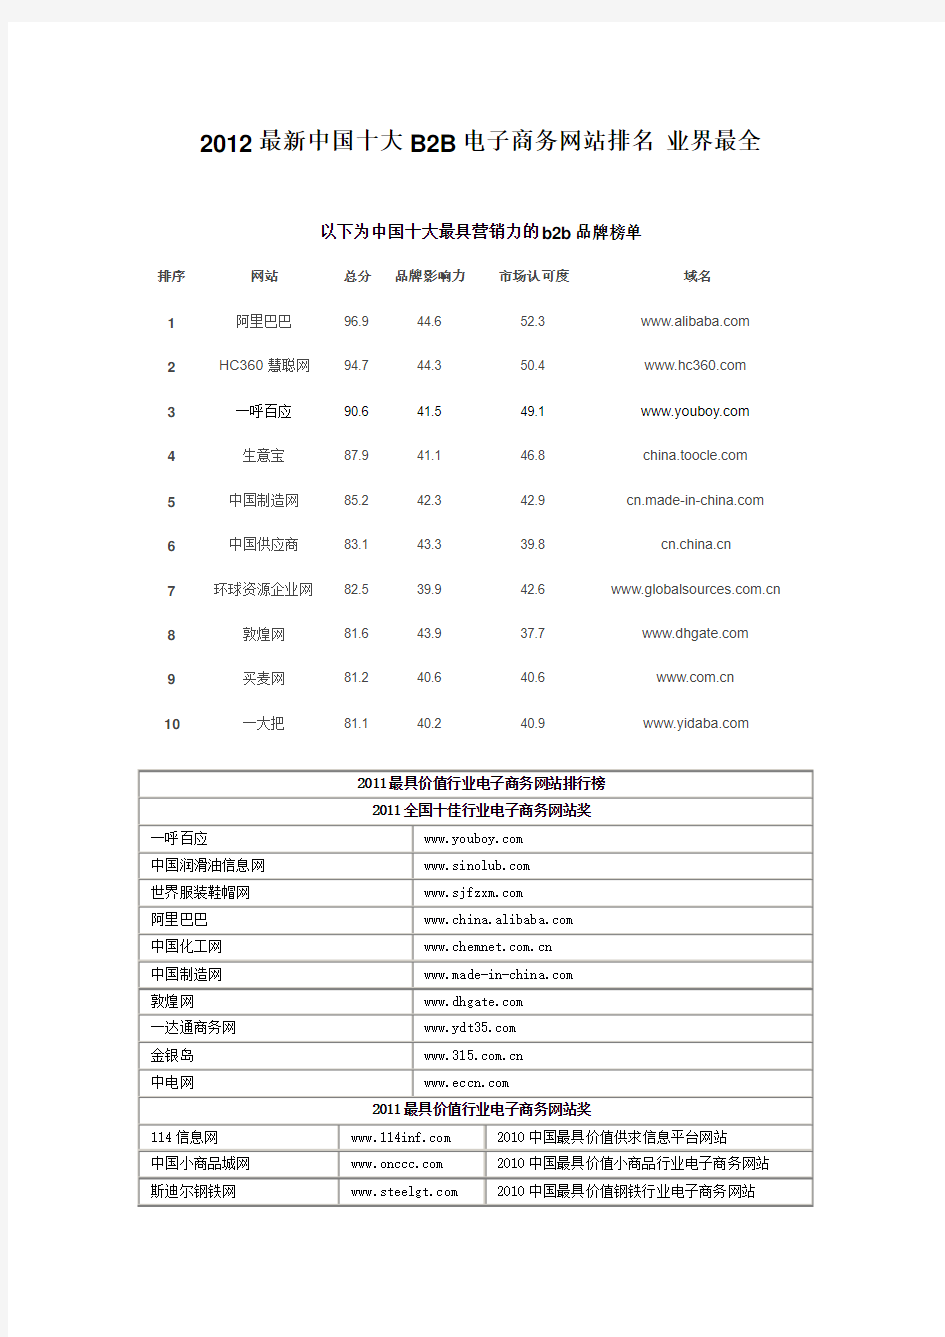 2012最新中国十大B2B电子商务网站排名